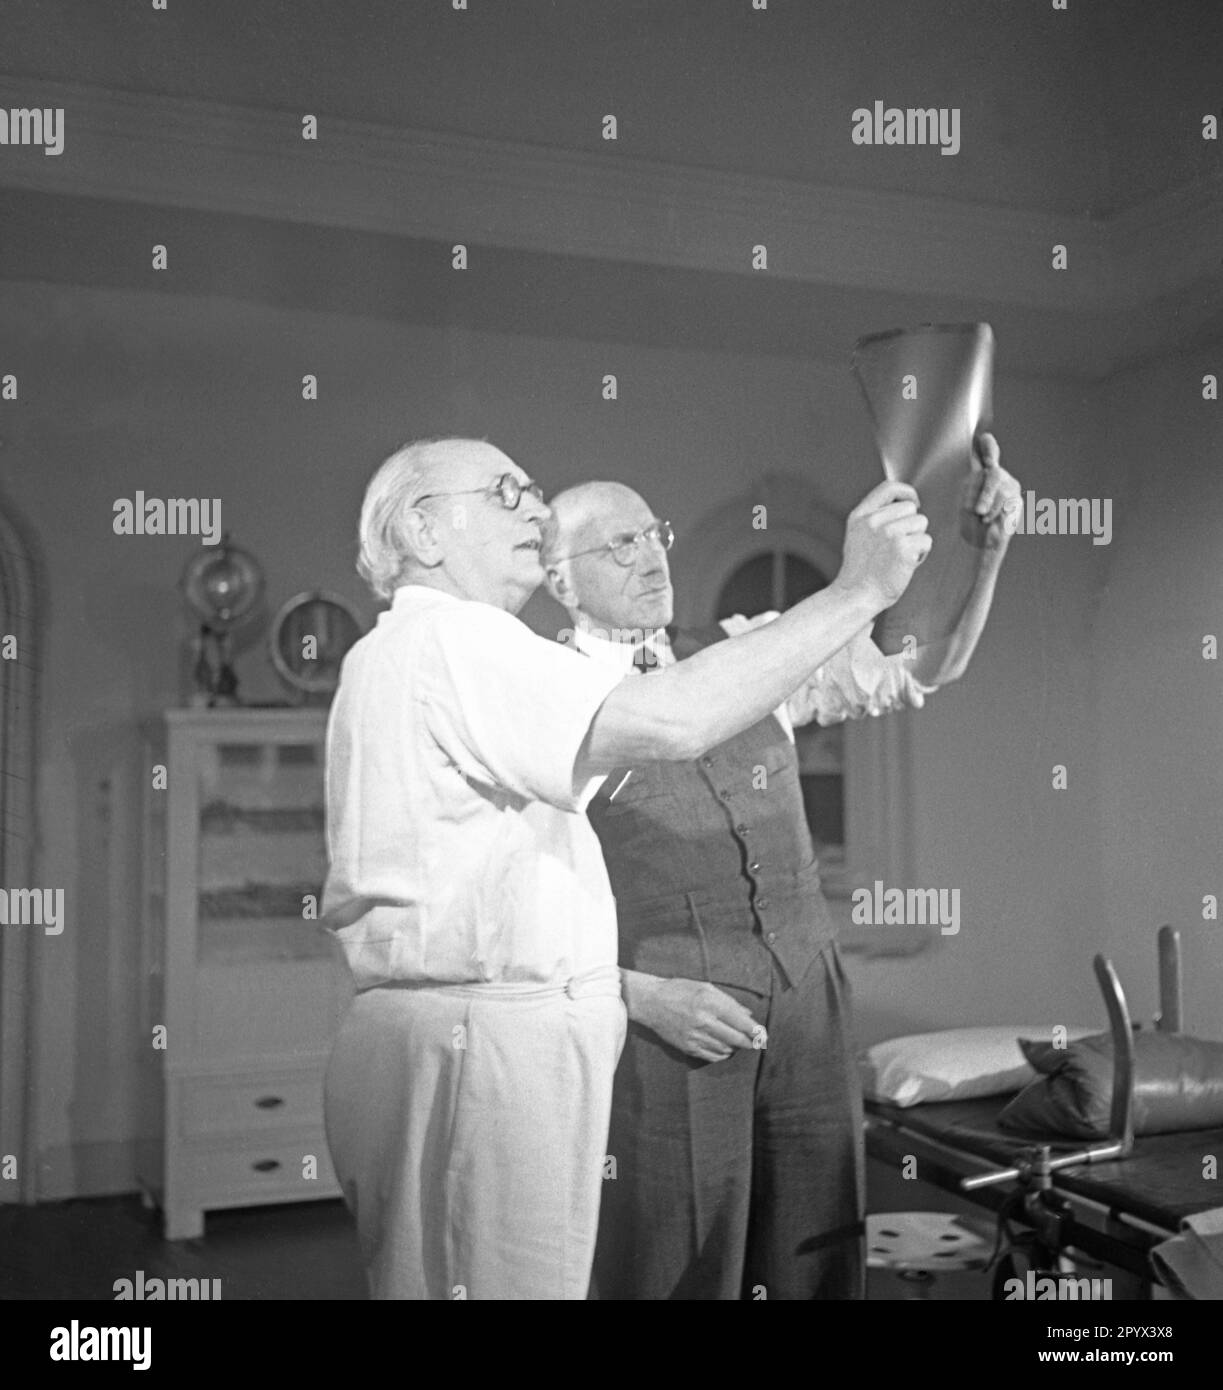 Les professeurs Ferdinand Sauerbruch (à droite) et Julius Jungblut (à gauche) examinent une radiographie à la clinique privée gérée conjointement à Berlin-Grunewald. Banque D'Images